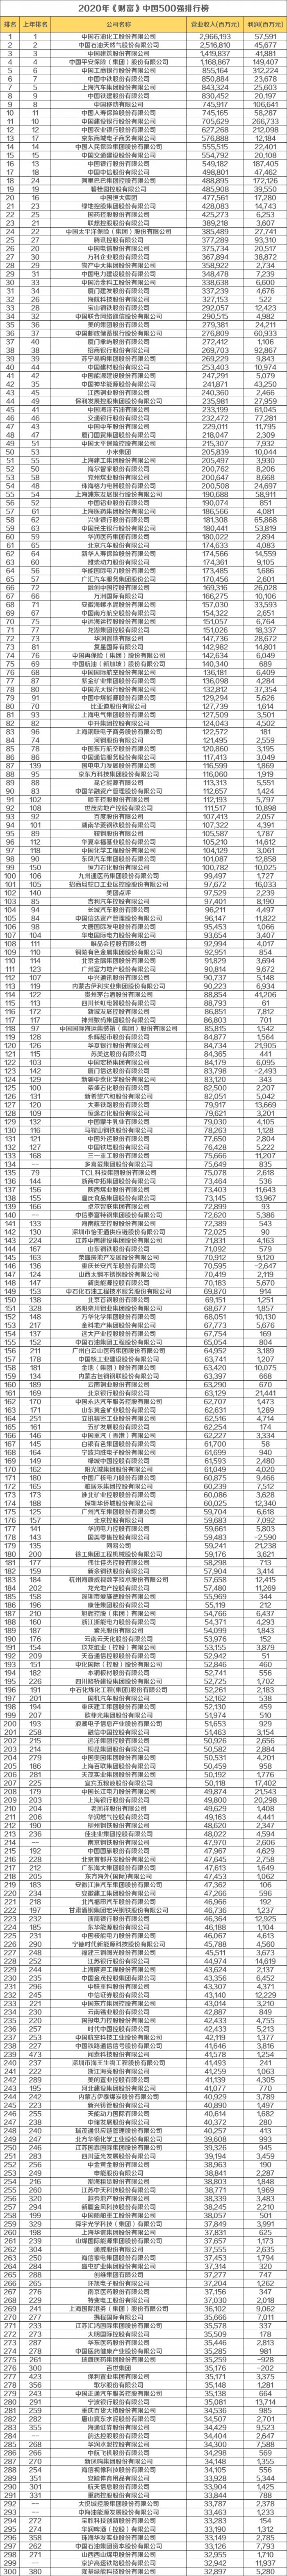 《財富》中國500強區域分佈圖譜: 京粵滬最多!-圖9